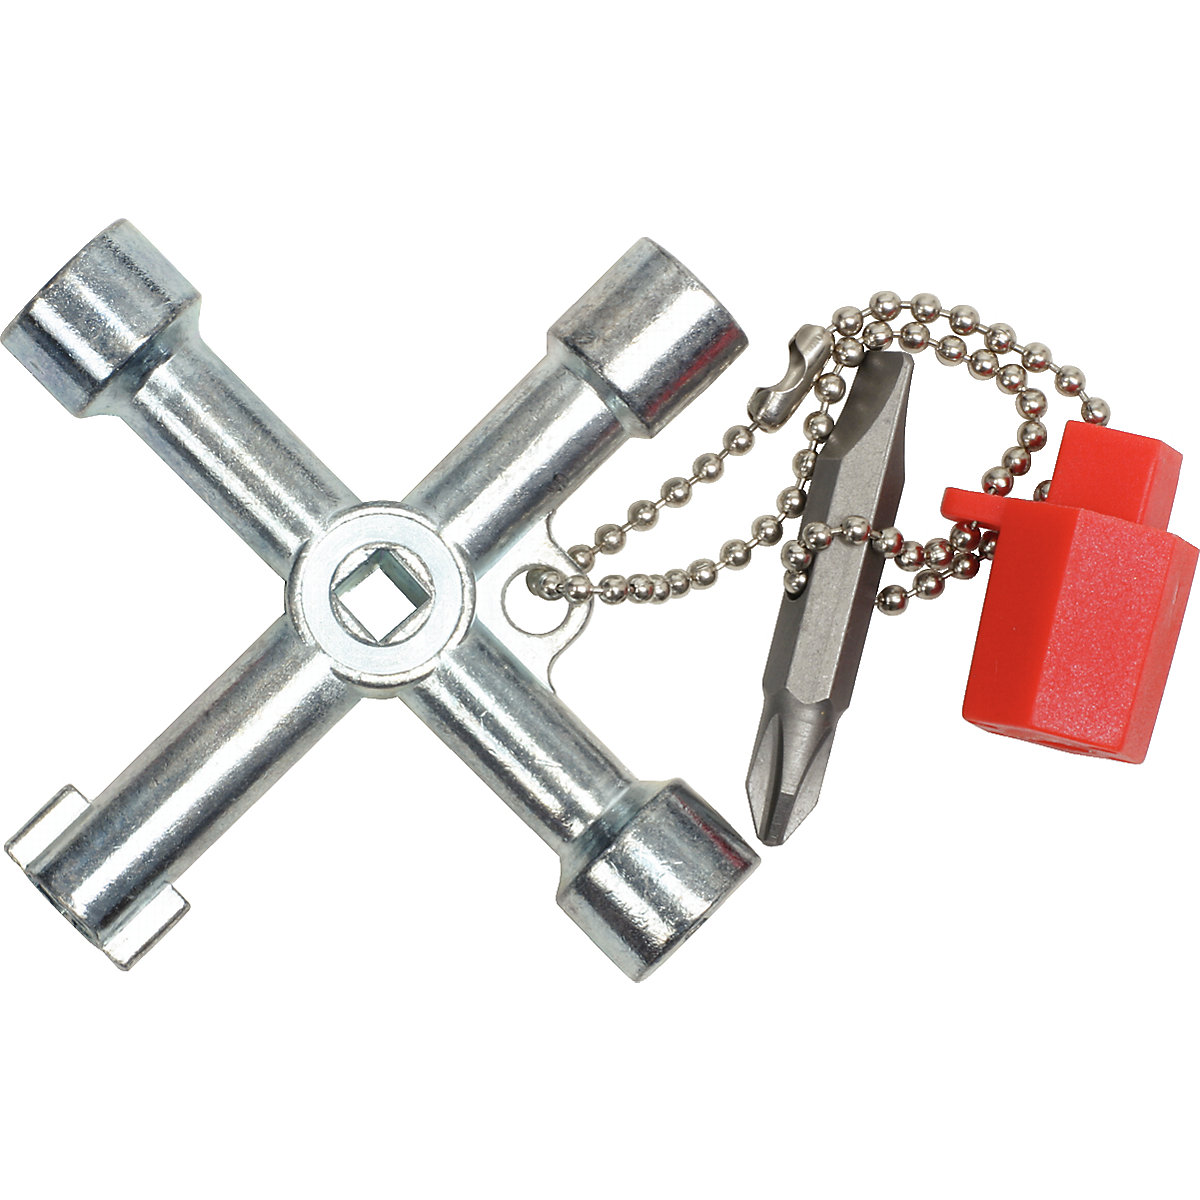 Klucz uniwersalny do szaf rozdzielczych – KS Tools (Zdjęcie produktu 4)-3